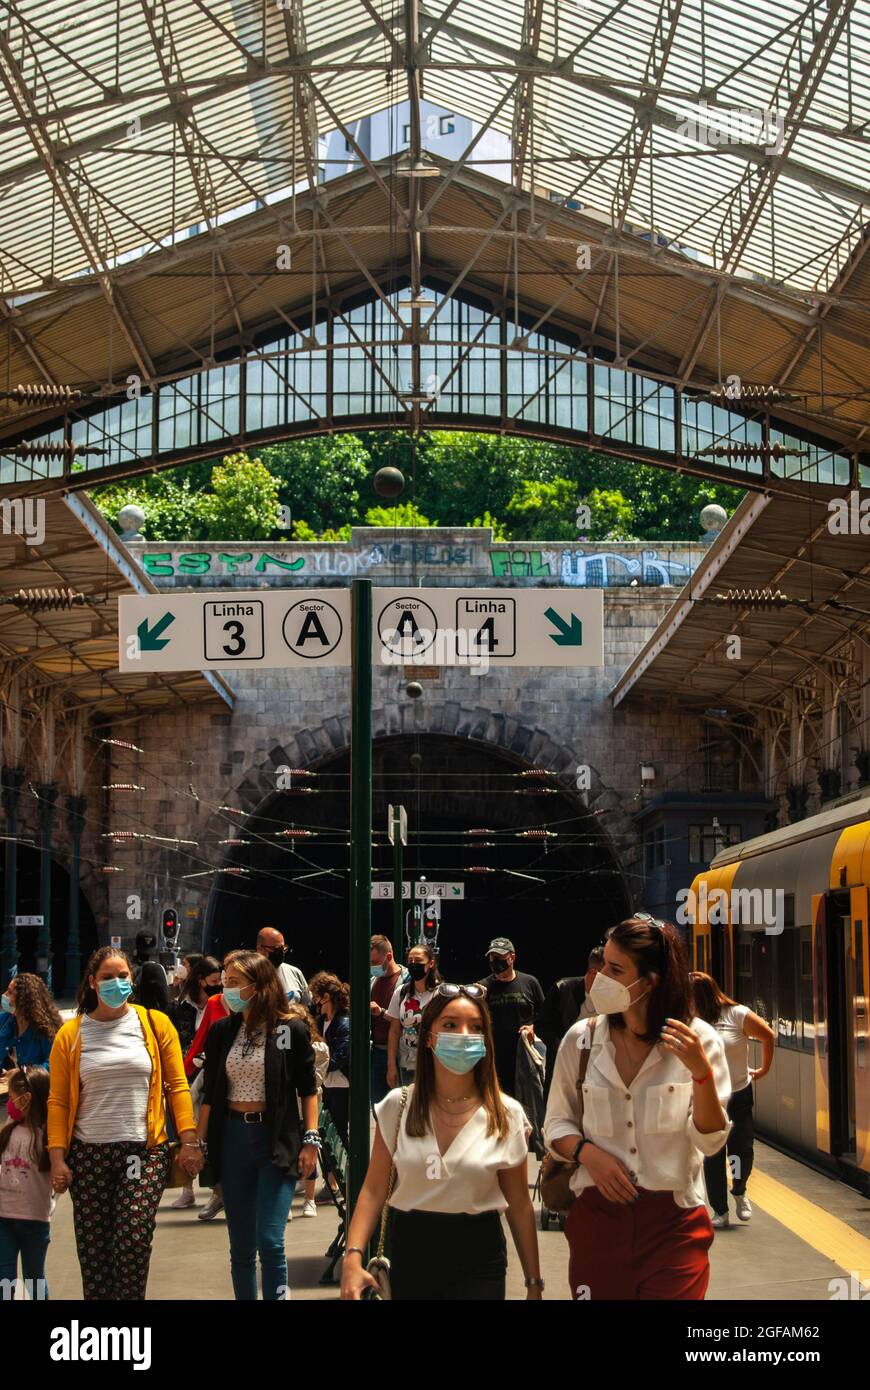 Porto, Portugal - 6. Juni 2021: Sao Bento Bahnhof von innen Menschen, die aus den Zügen gehen - Linien und Sektoren Schilder Text, Vertikal Stockfoto